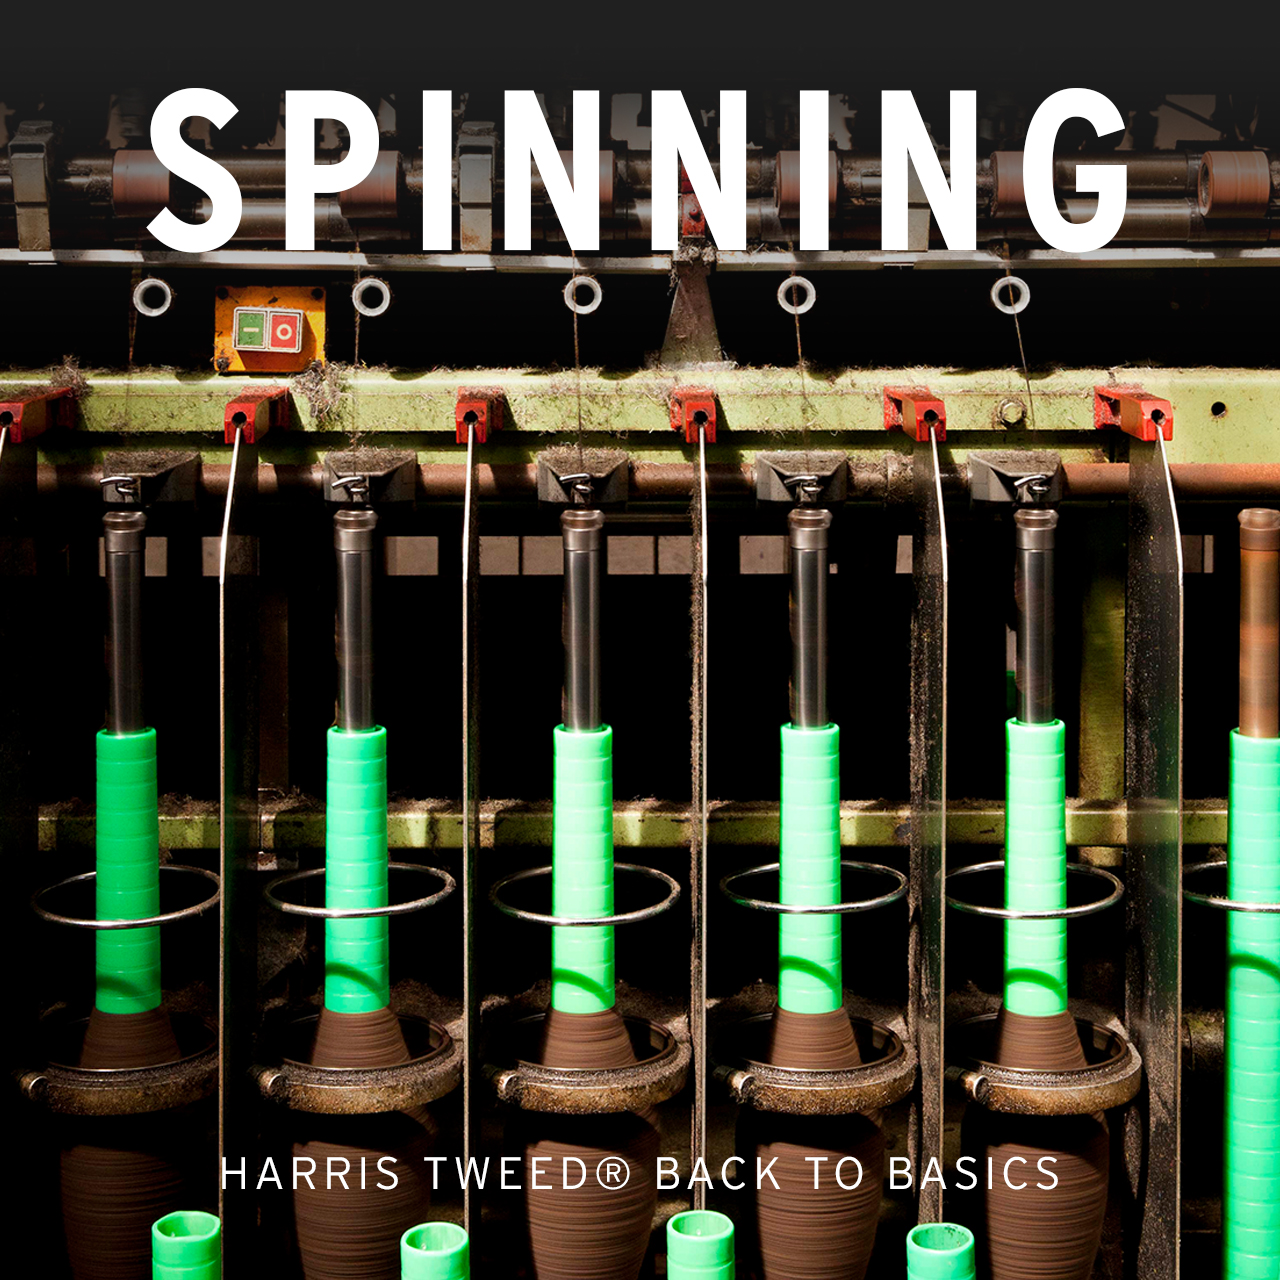 Harris tweed mill series spinning